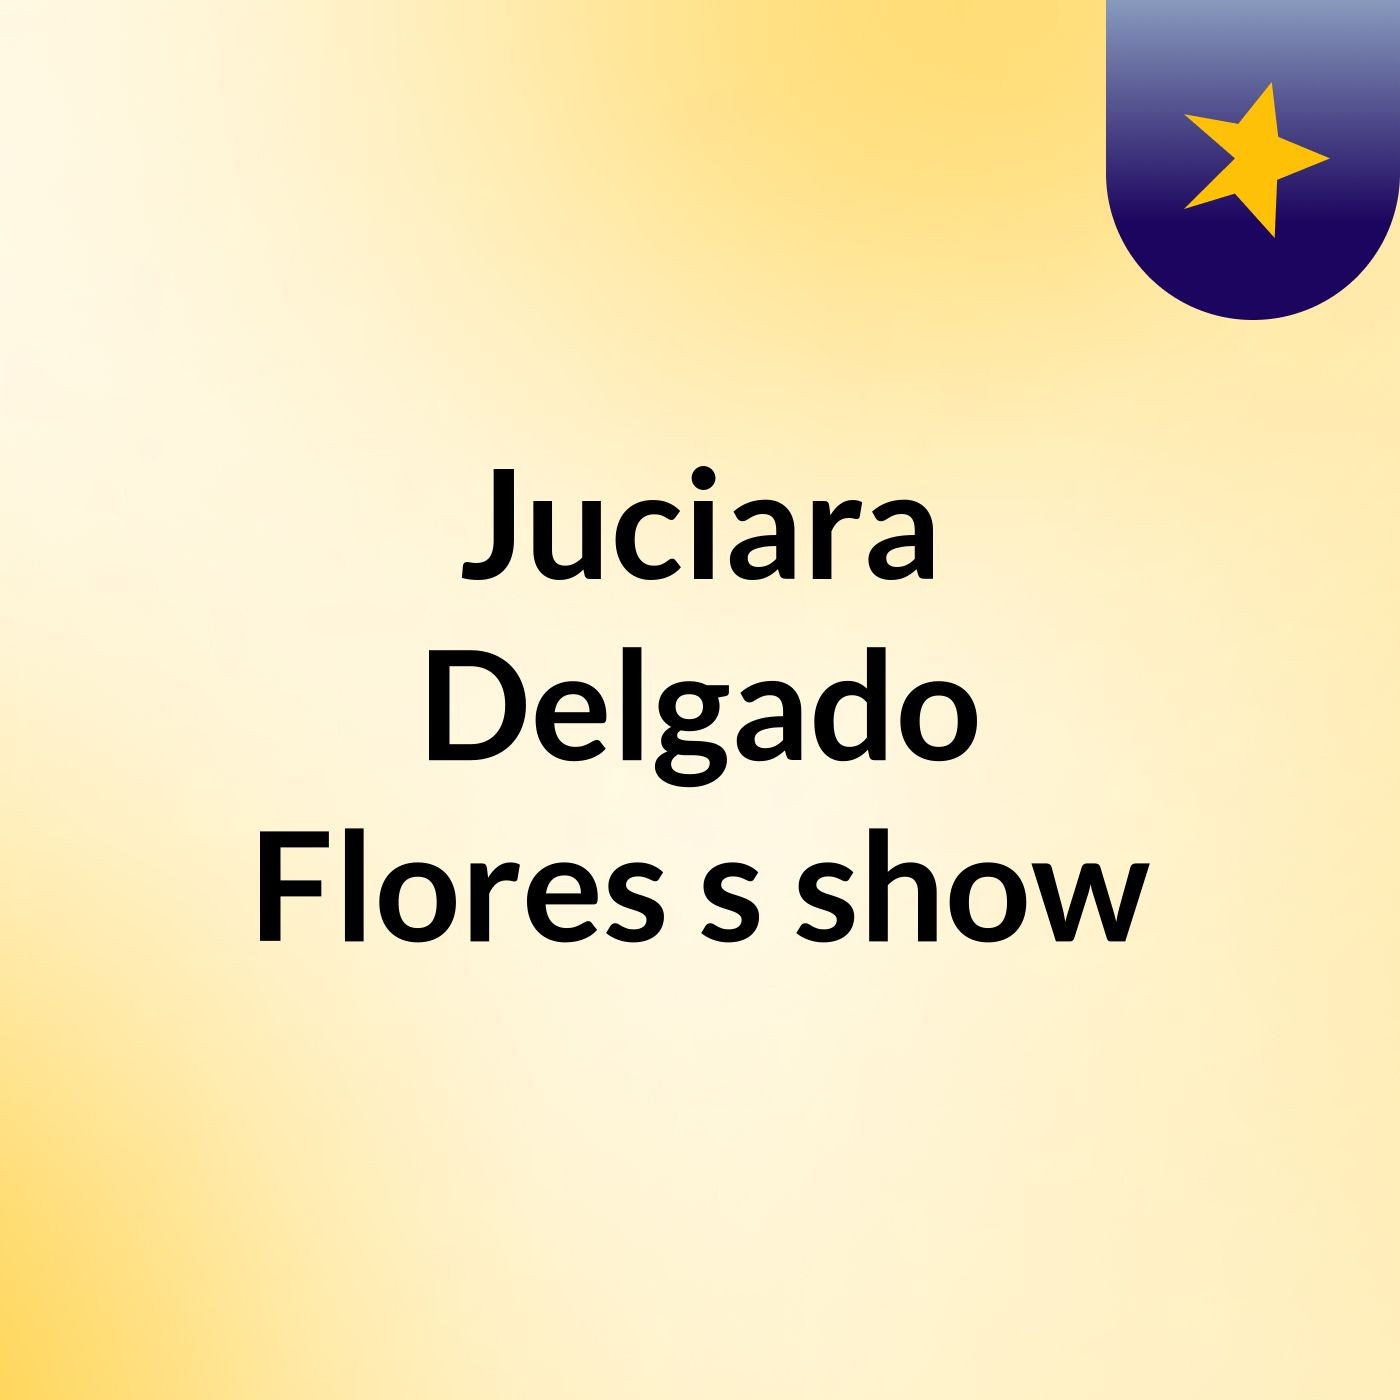 Juciara Delgado Flores's show